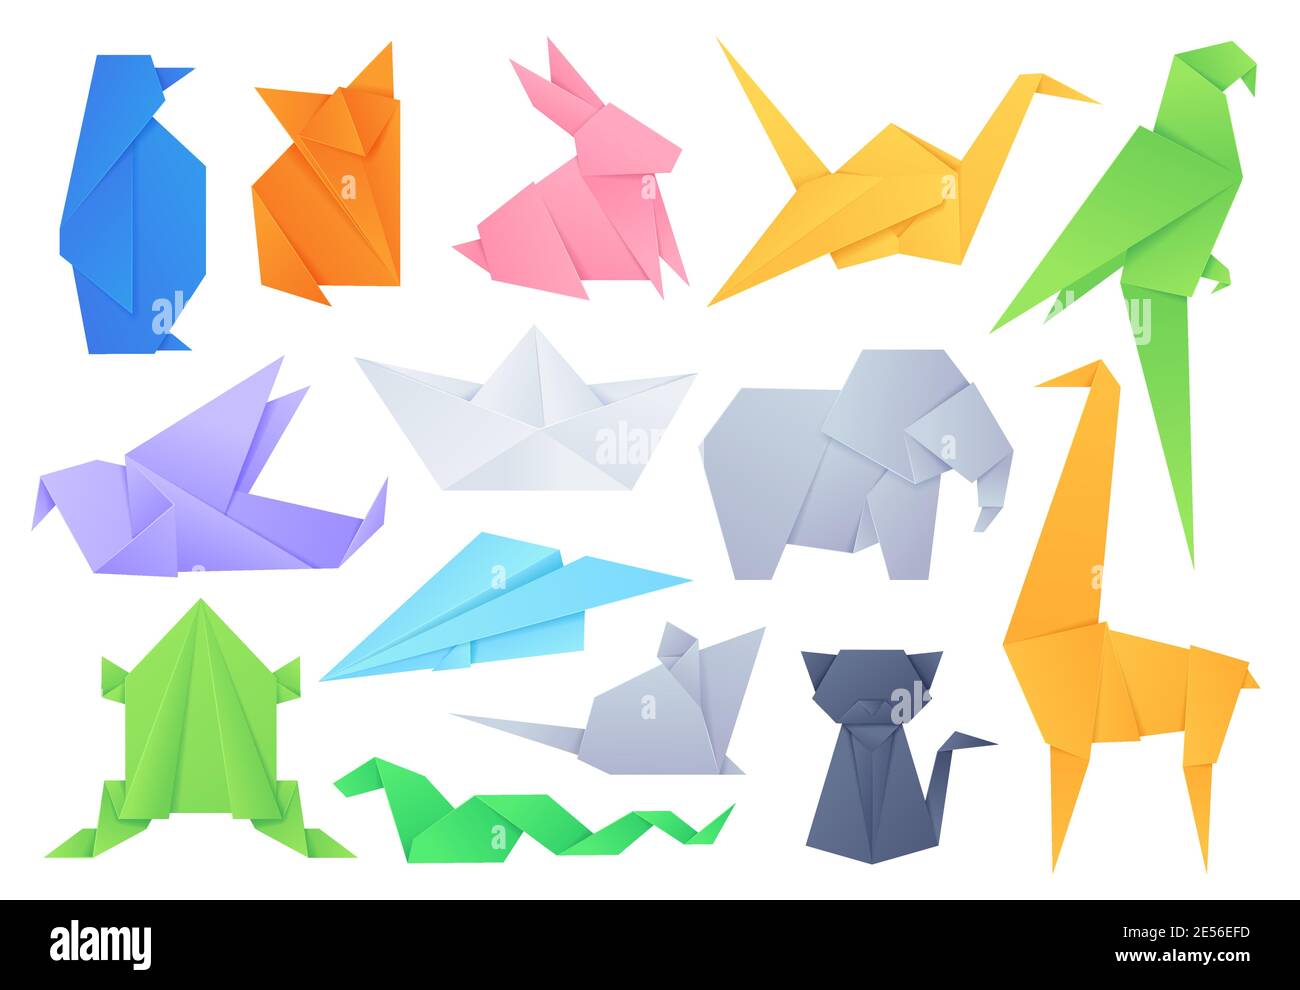 Animaux d'origami. Formes géométriques pliées pour bateau et avion en papier de jeu japonais, grue, oiseaux, chat, éléphant et lapin. Jeu de vecteurs de loisirs Illustration de Vecteur